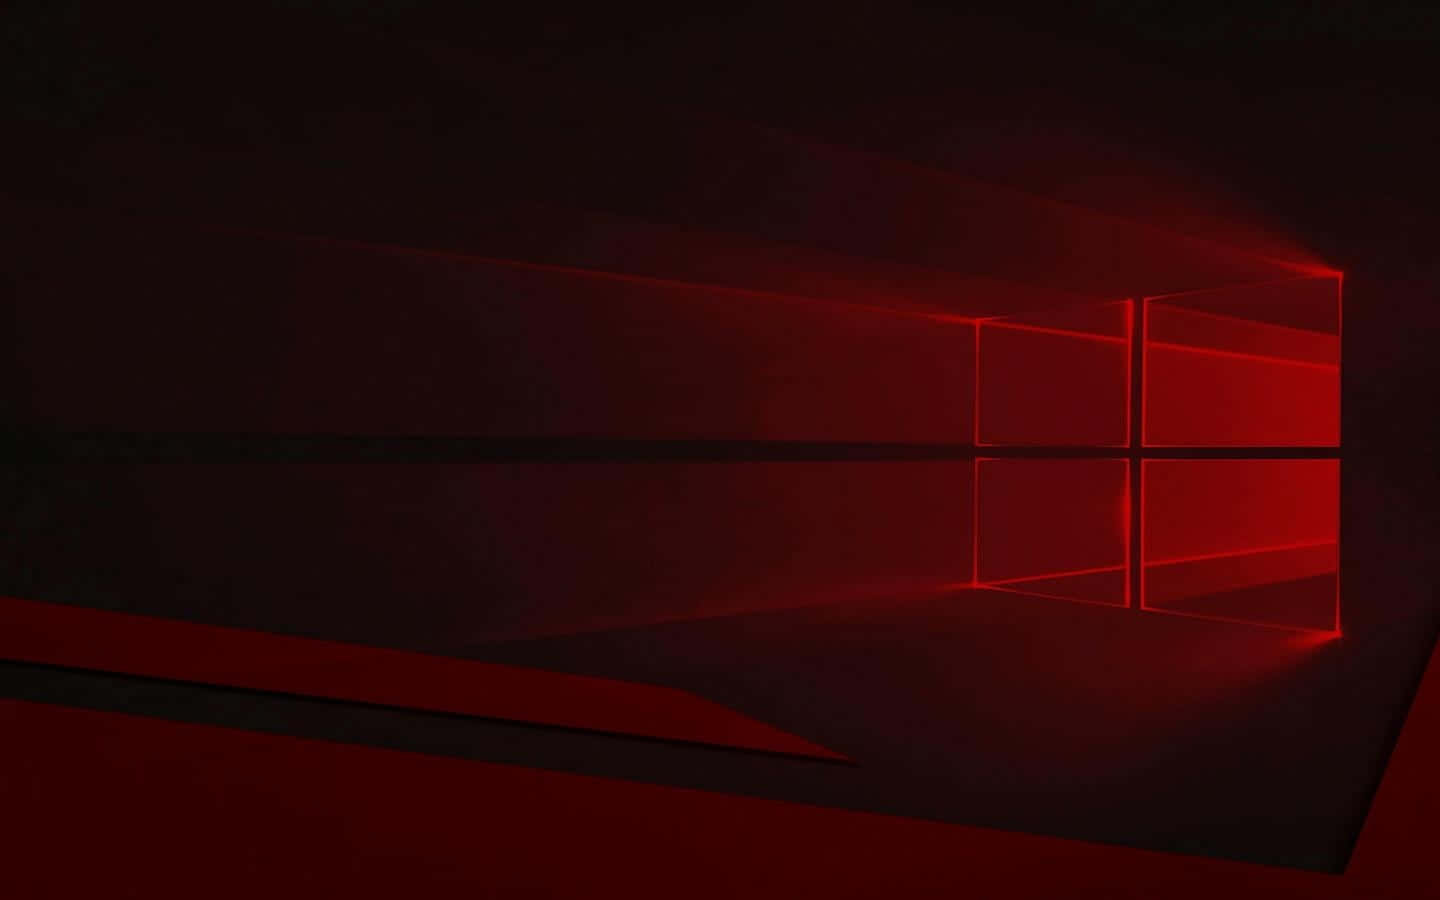 Fundovermelho Escuro, Sistema Operacional Windows Vermelho